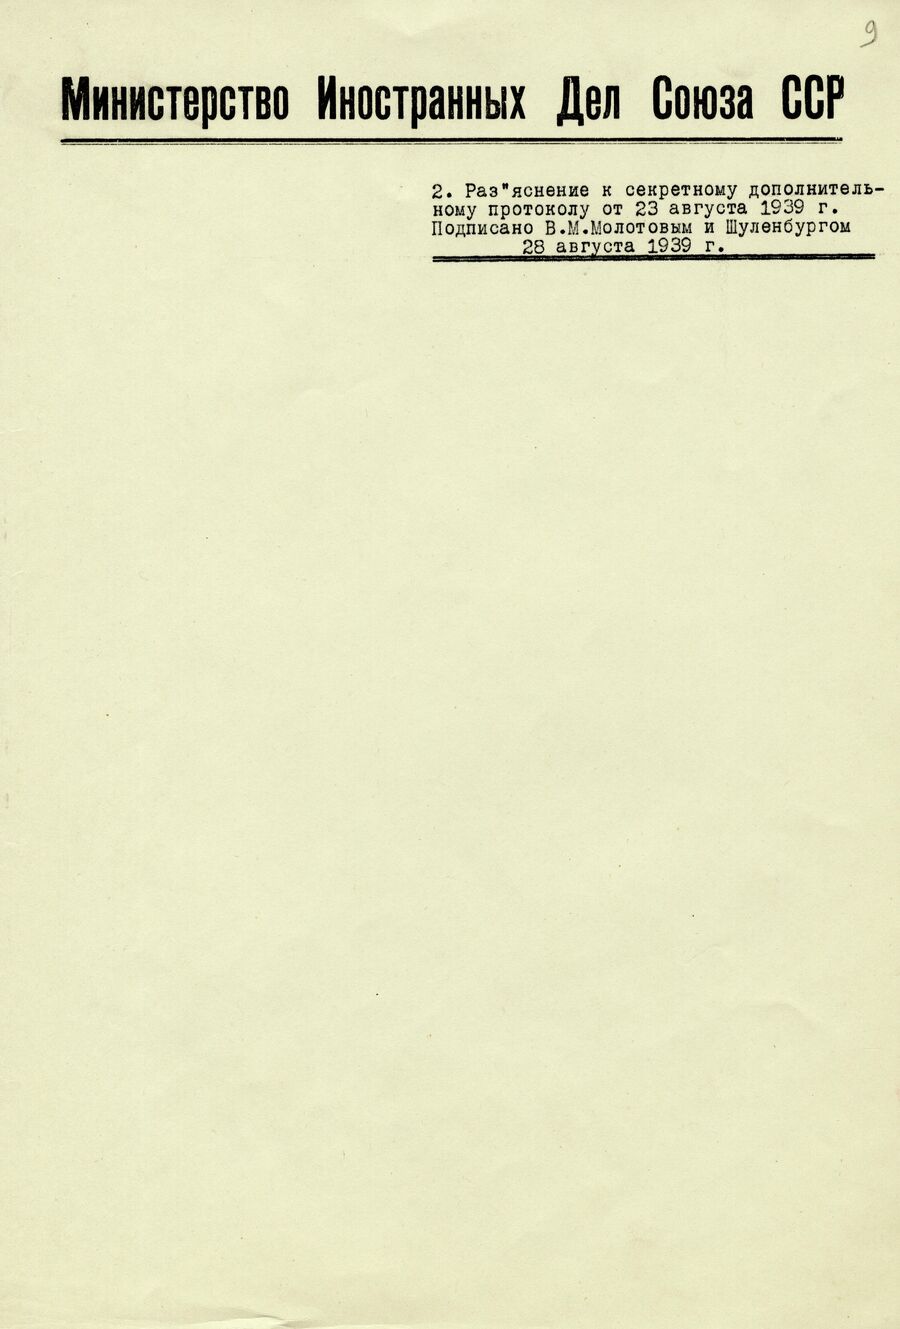 1939.08.23 Секретный протокол. Лист 9